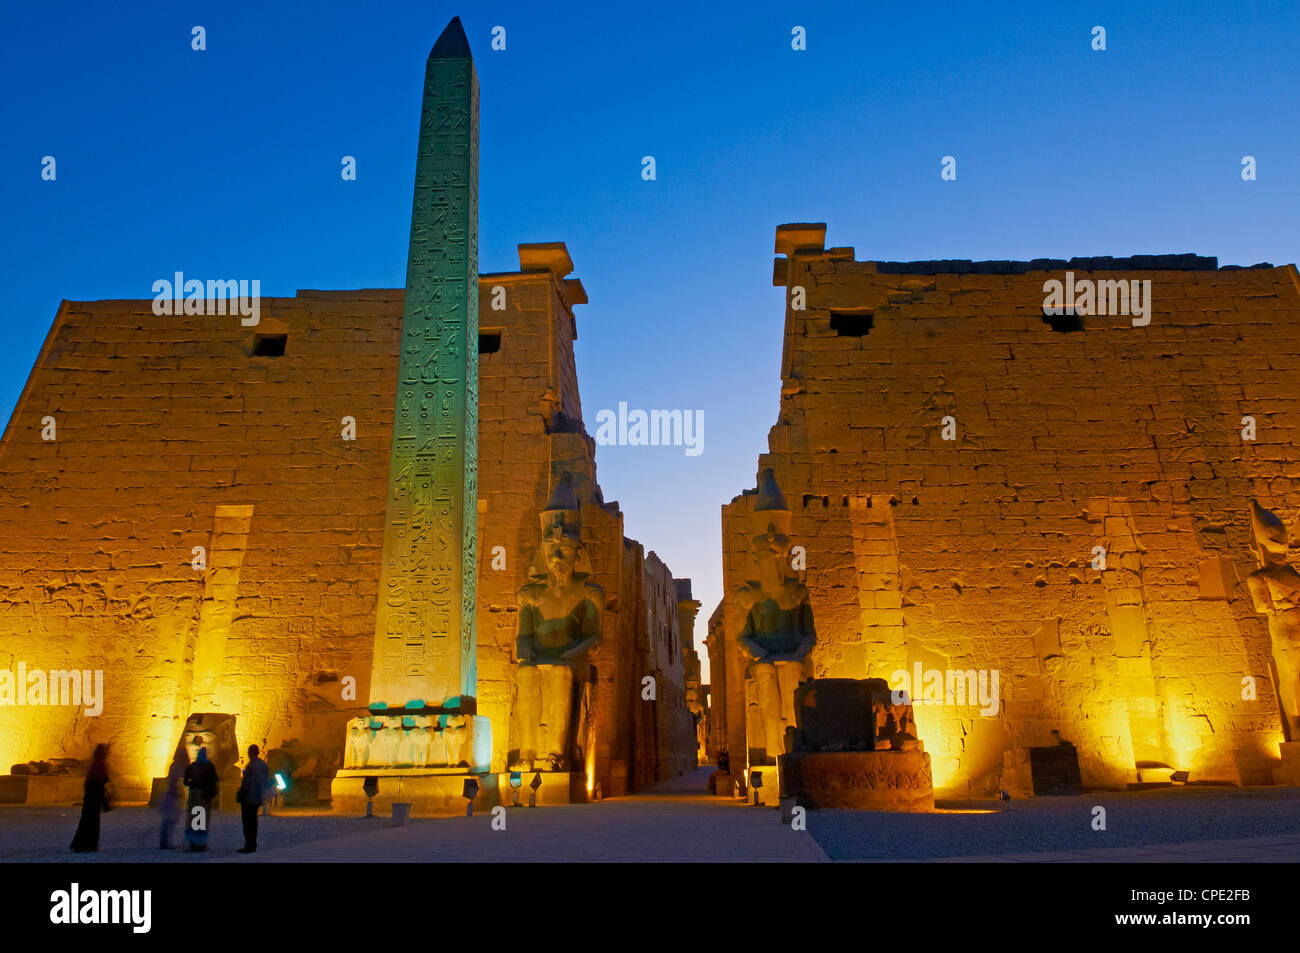 El obelisco de Ramsés II, el Templo de Luxor, Tebas, Sitio del Patrimonio Mundial de la UNESCO, Egipto, el Norte de África, África Foto de stock